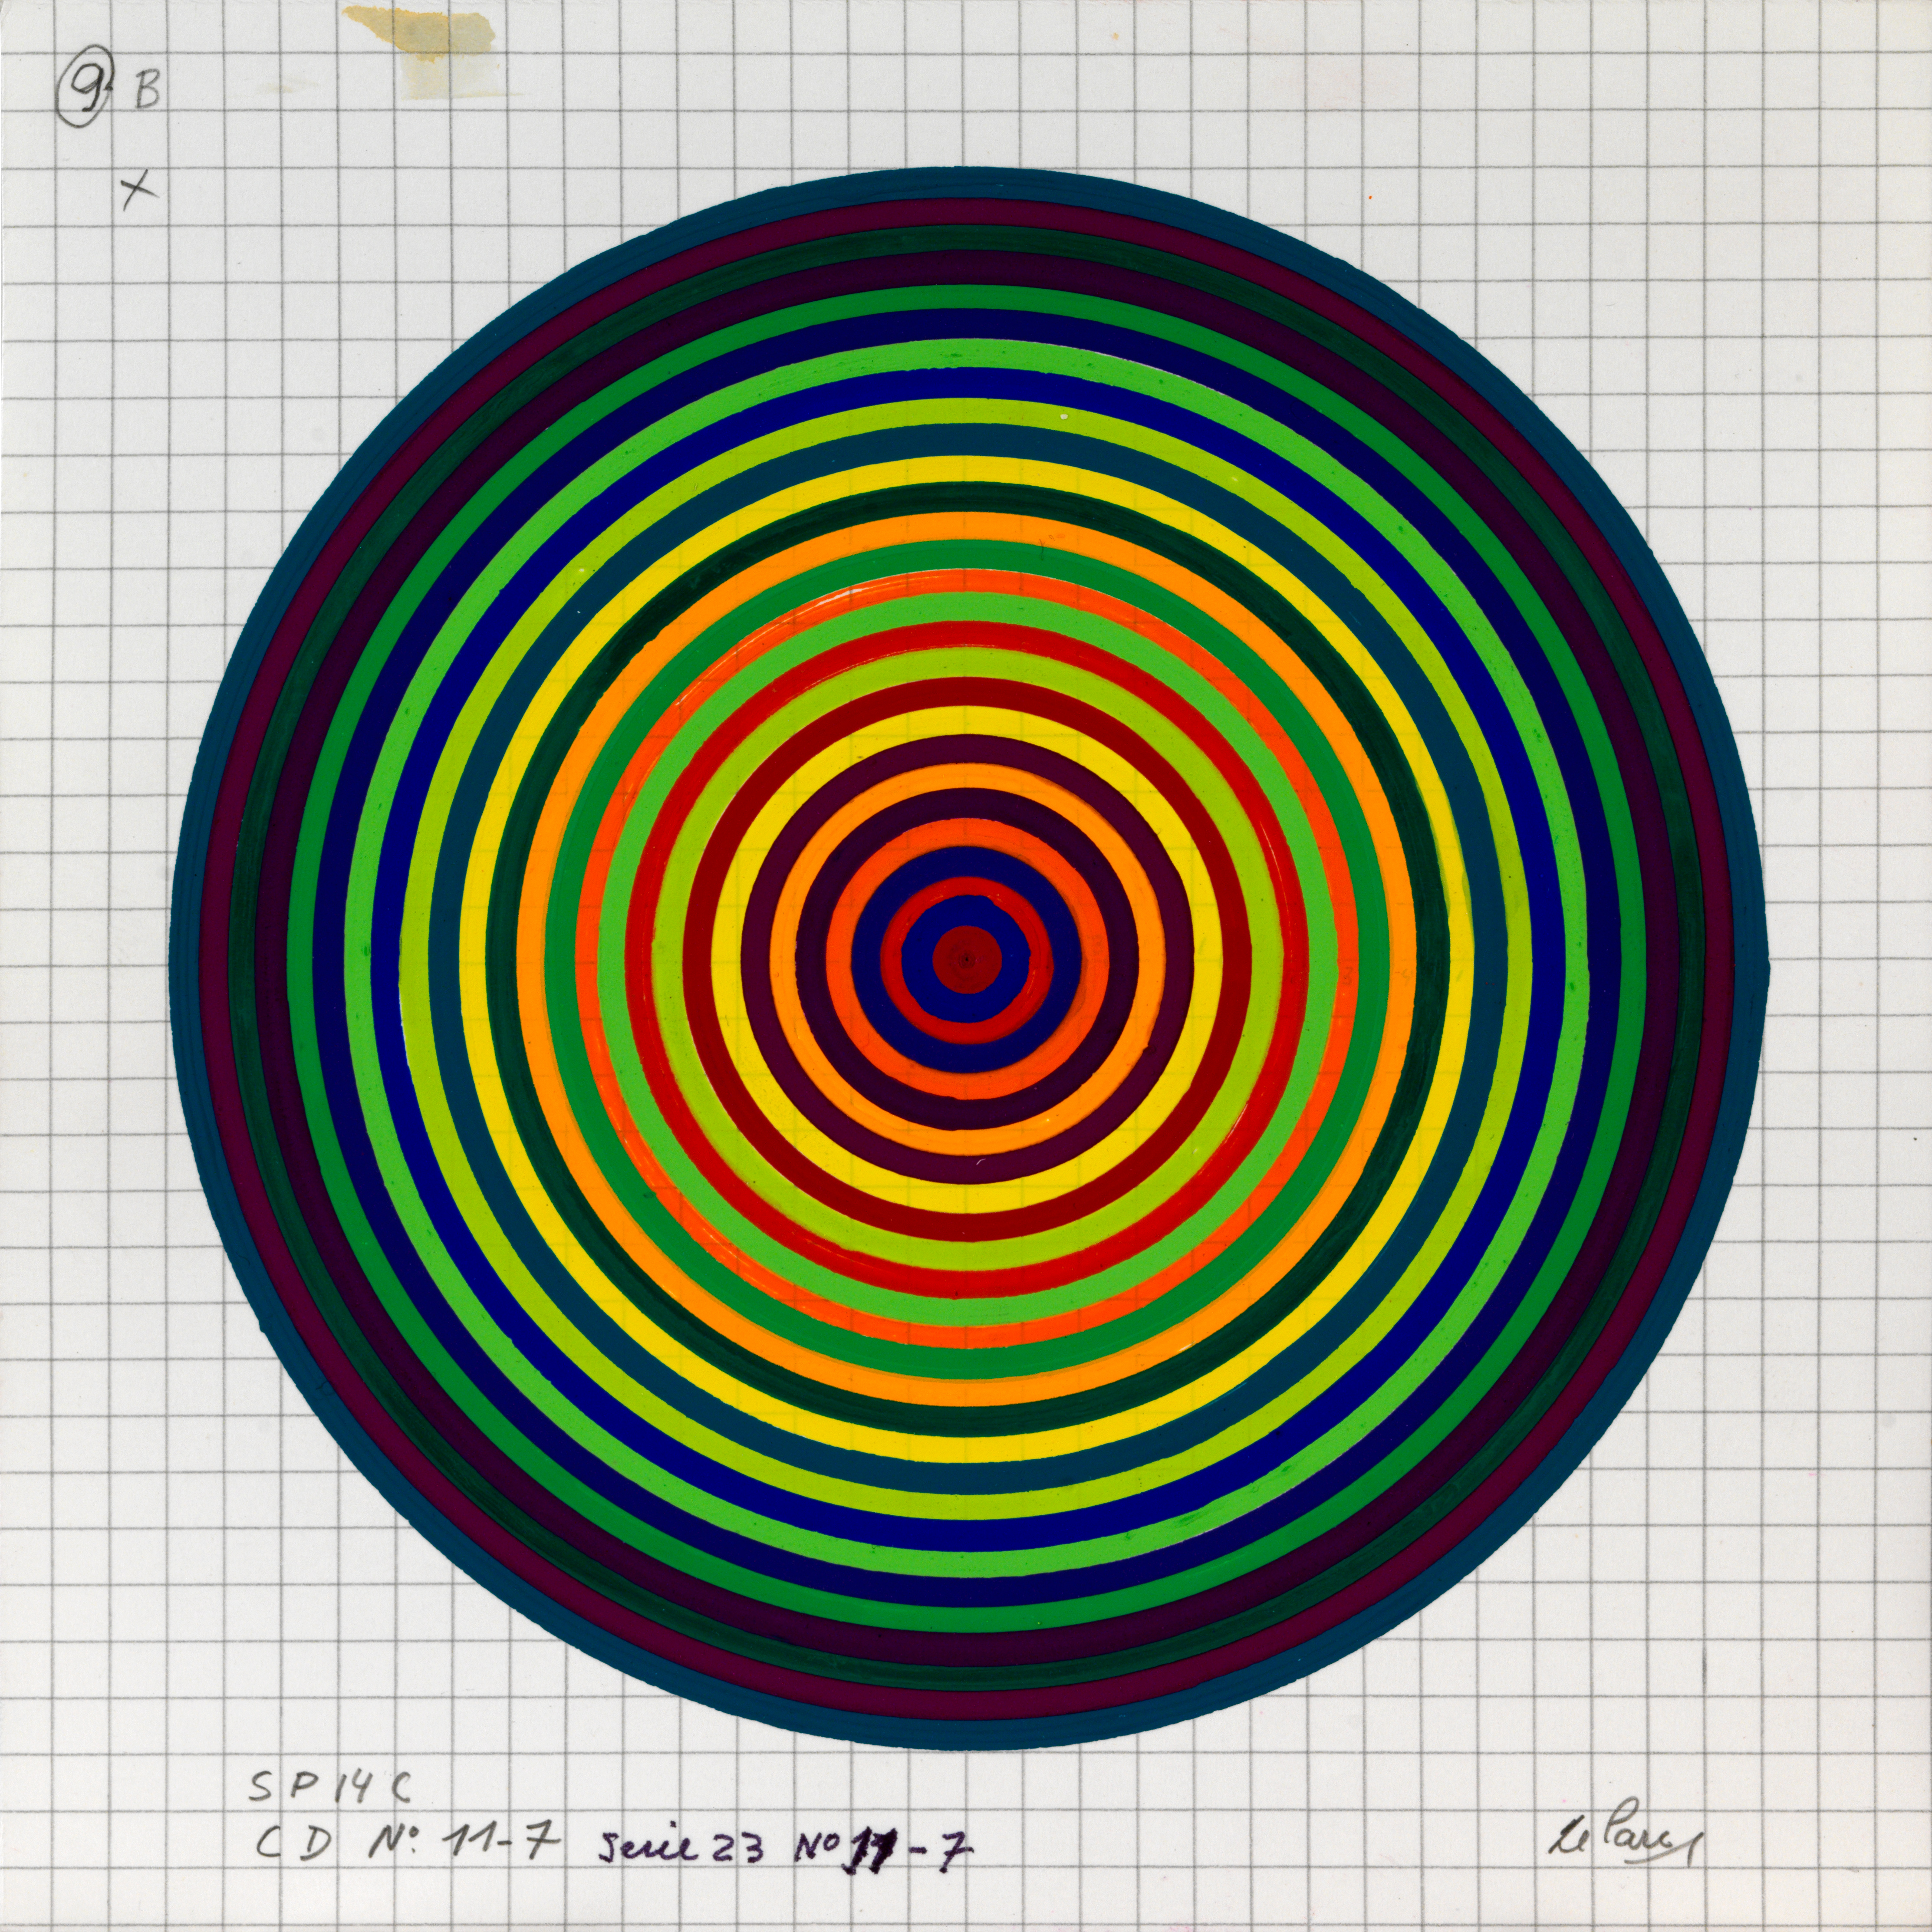 Julio Le Parc, Surface couleur, Cercles, série 23 n°11-7